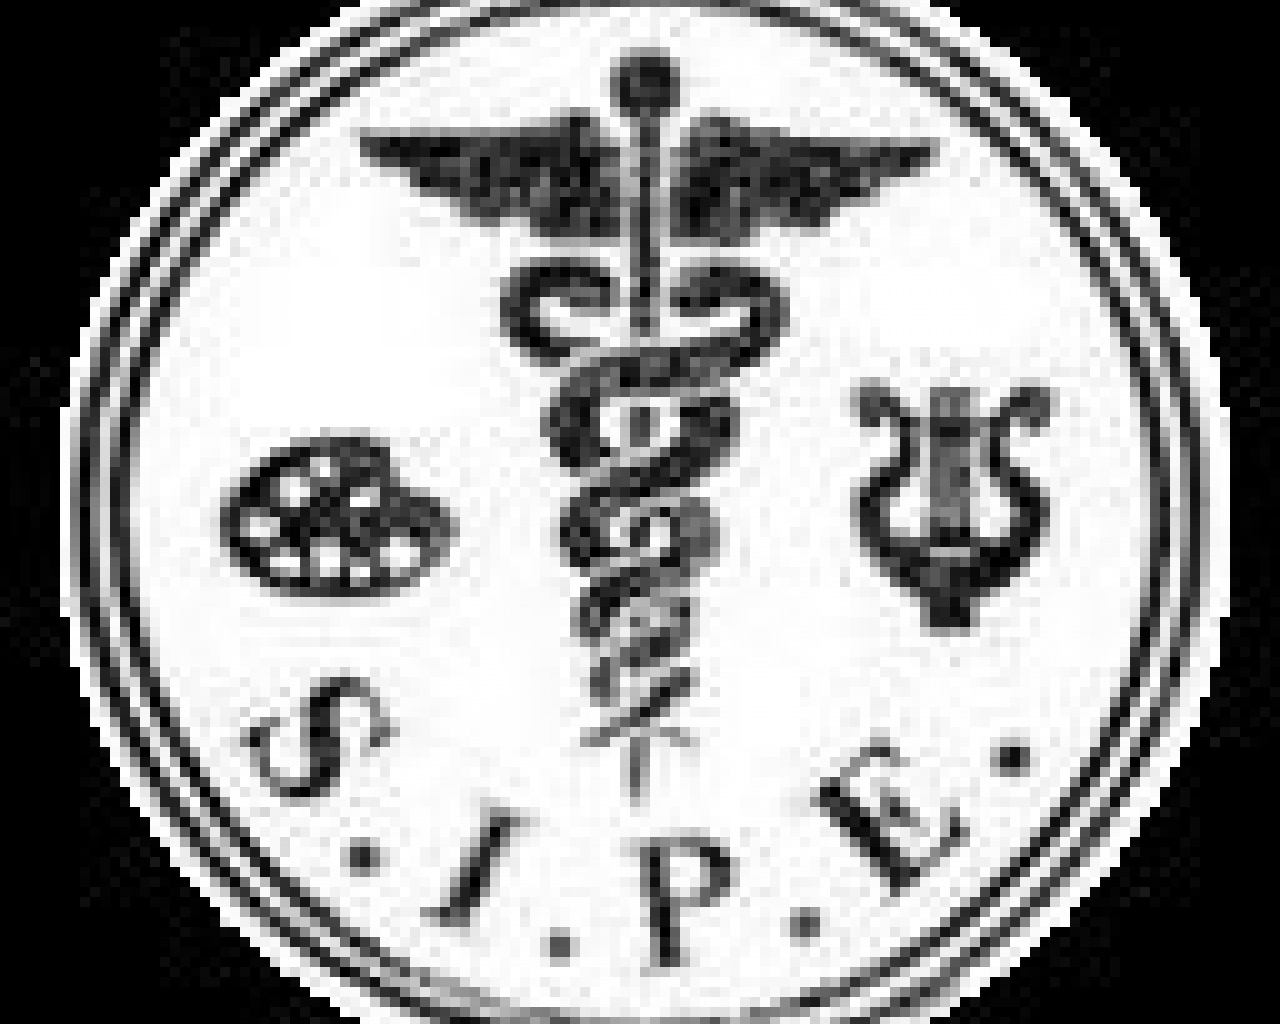 SIPE-AT (Société Internationale de Psychopathologie de l'Expression et d'Art-Thérapie)